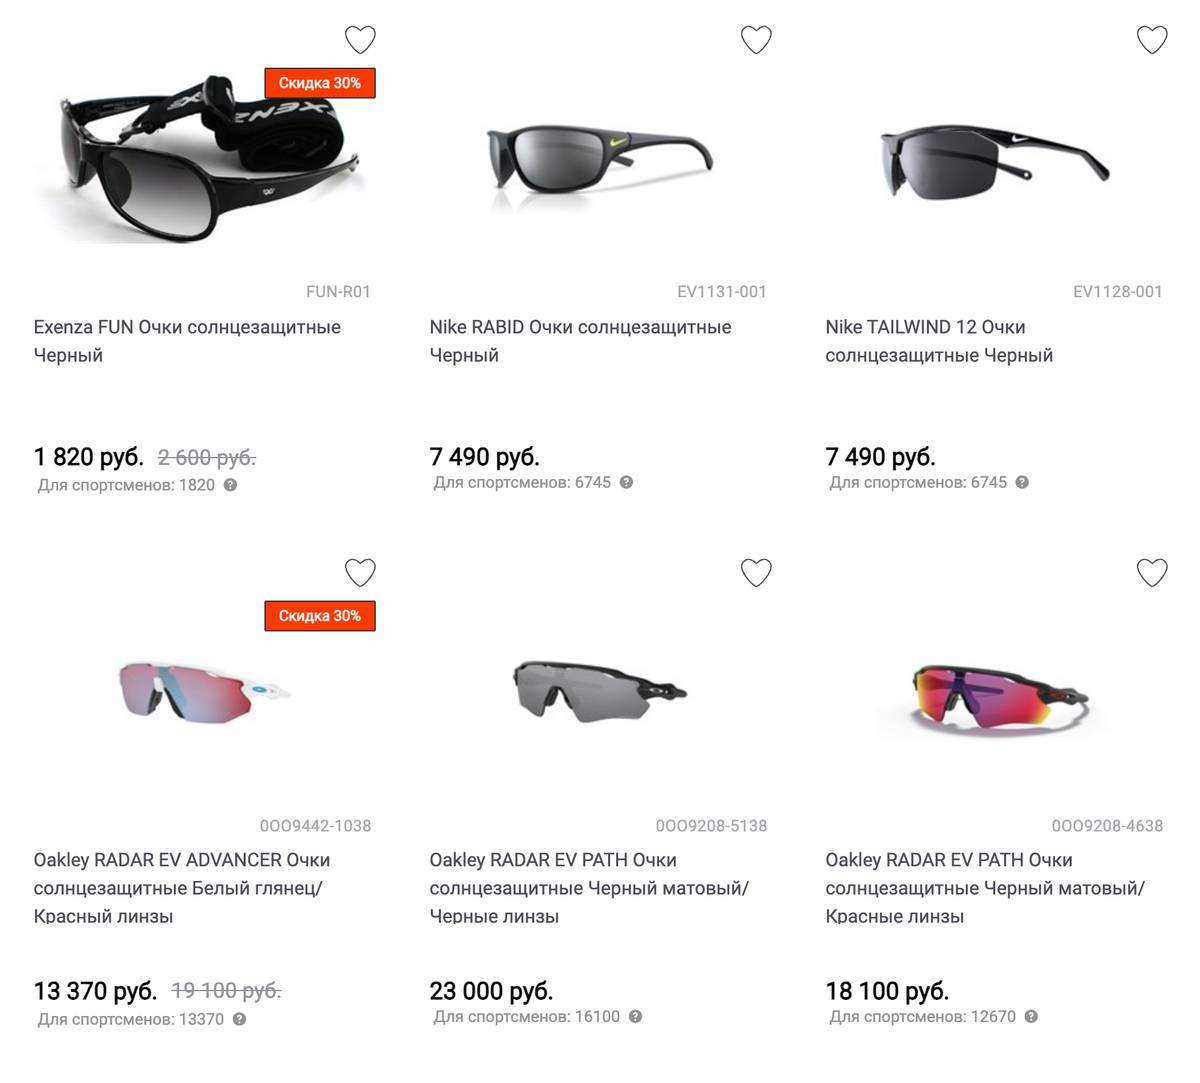 Специальные спортивные солнцезащитные очки стоят довольно дорого, но на распродажах можно найти модели от 2000 <span class=ruble>Р</span>. Источник: kinash.ru